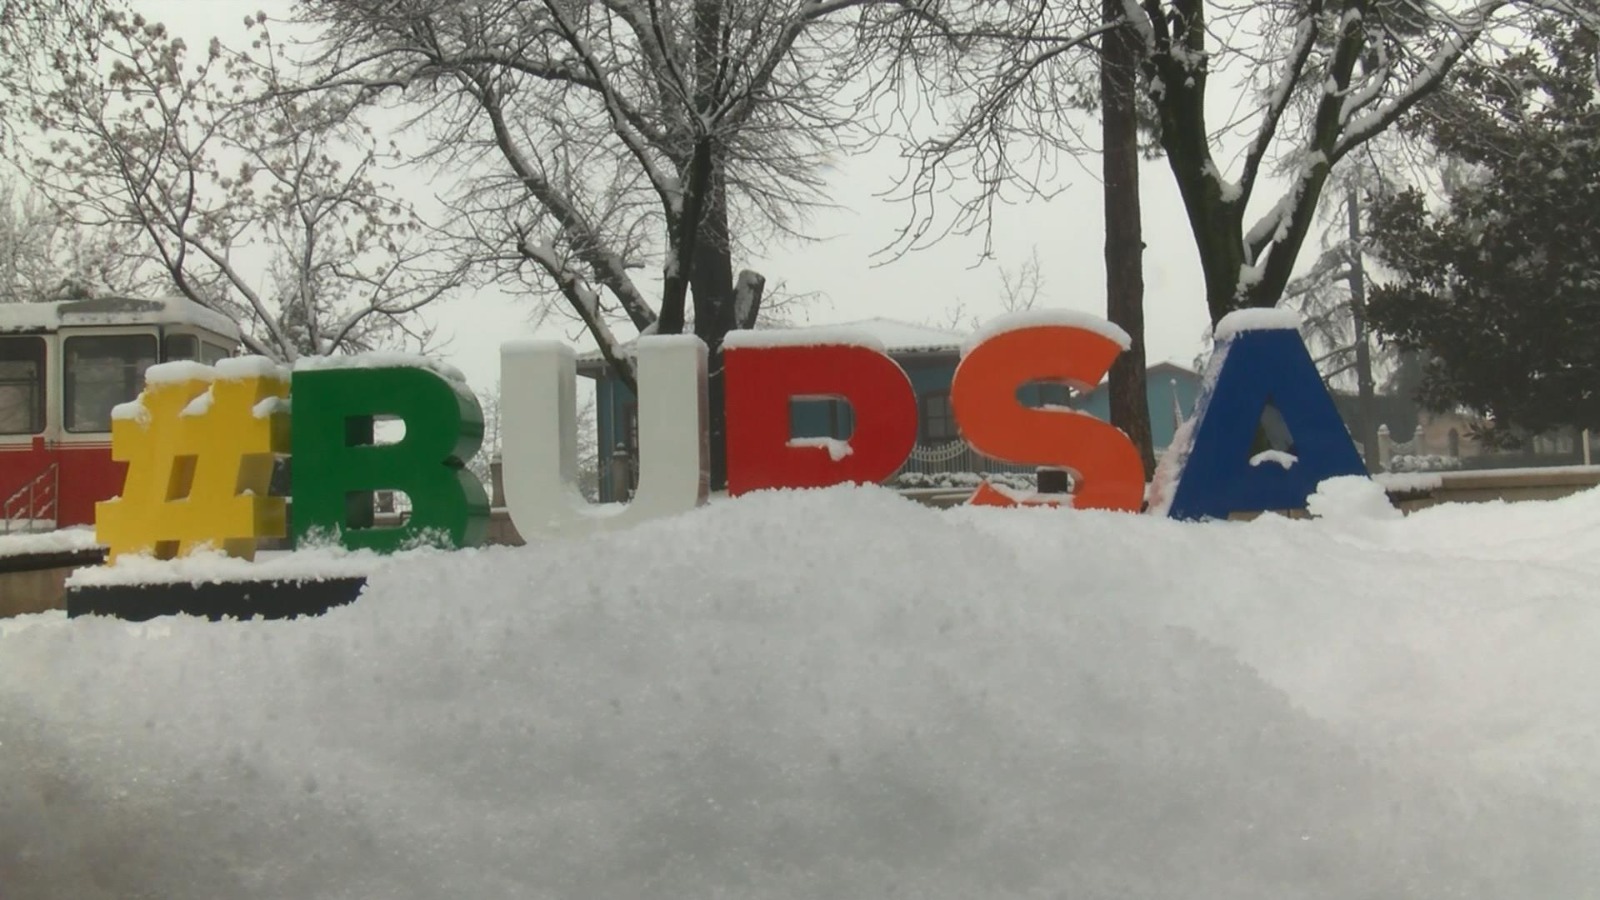 Bursa kar yağışının etkisi altında; Uludağ’a çıkışlara izin verilmiyor